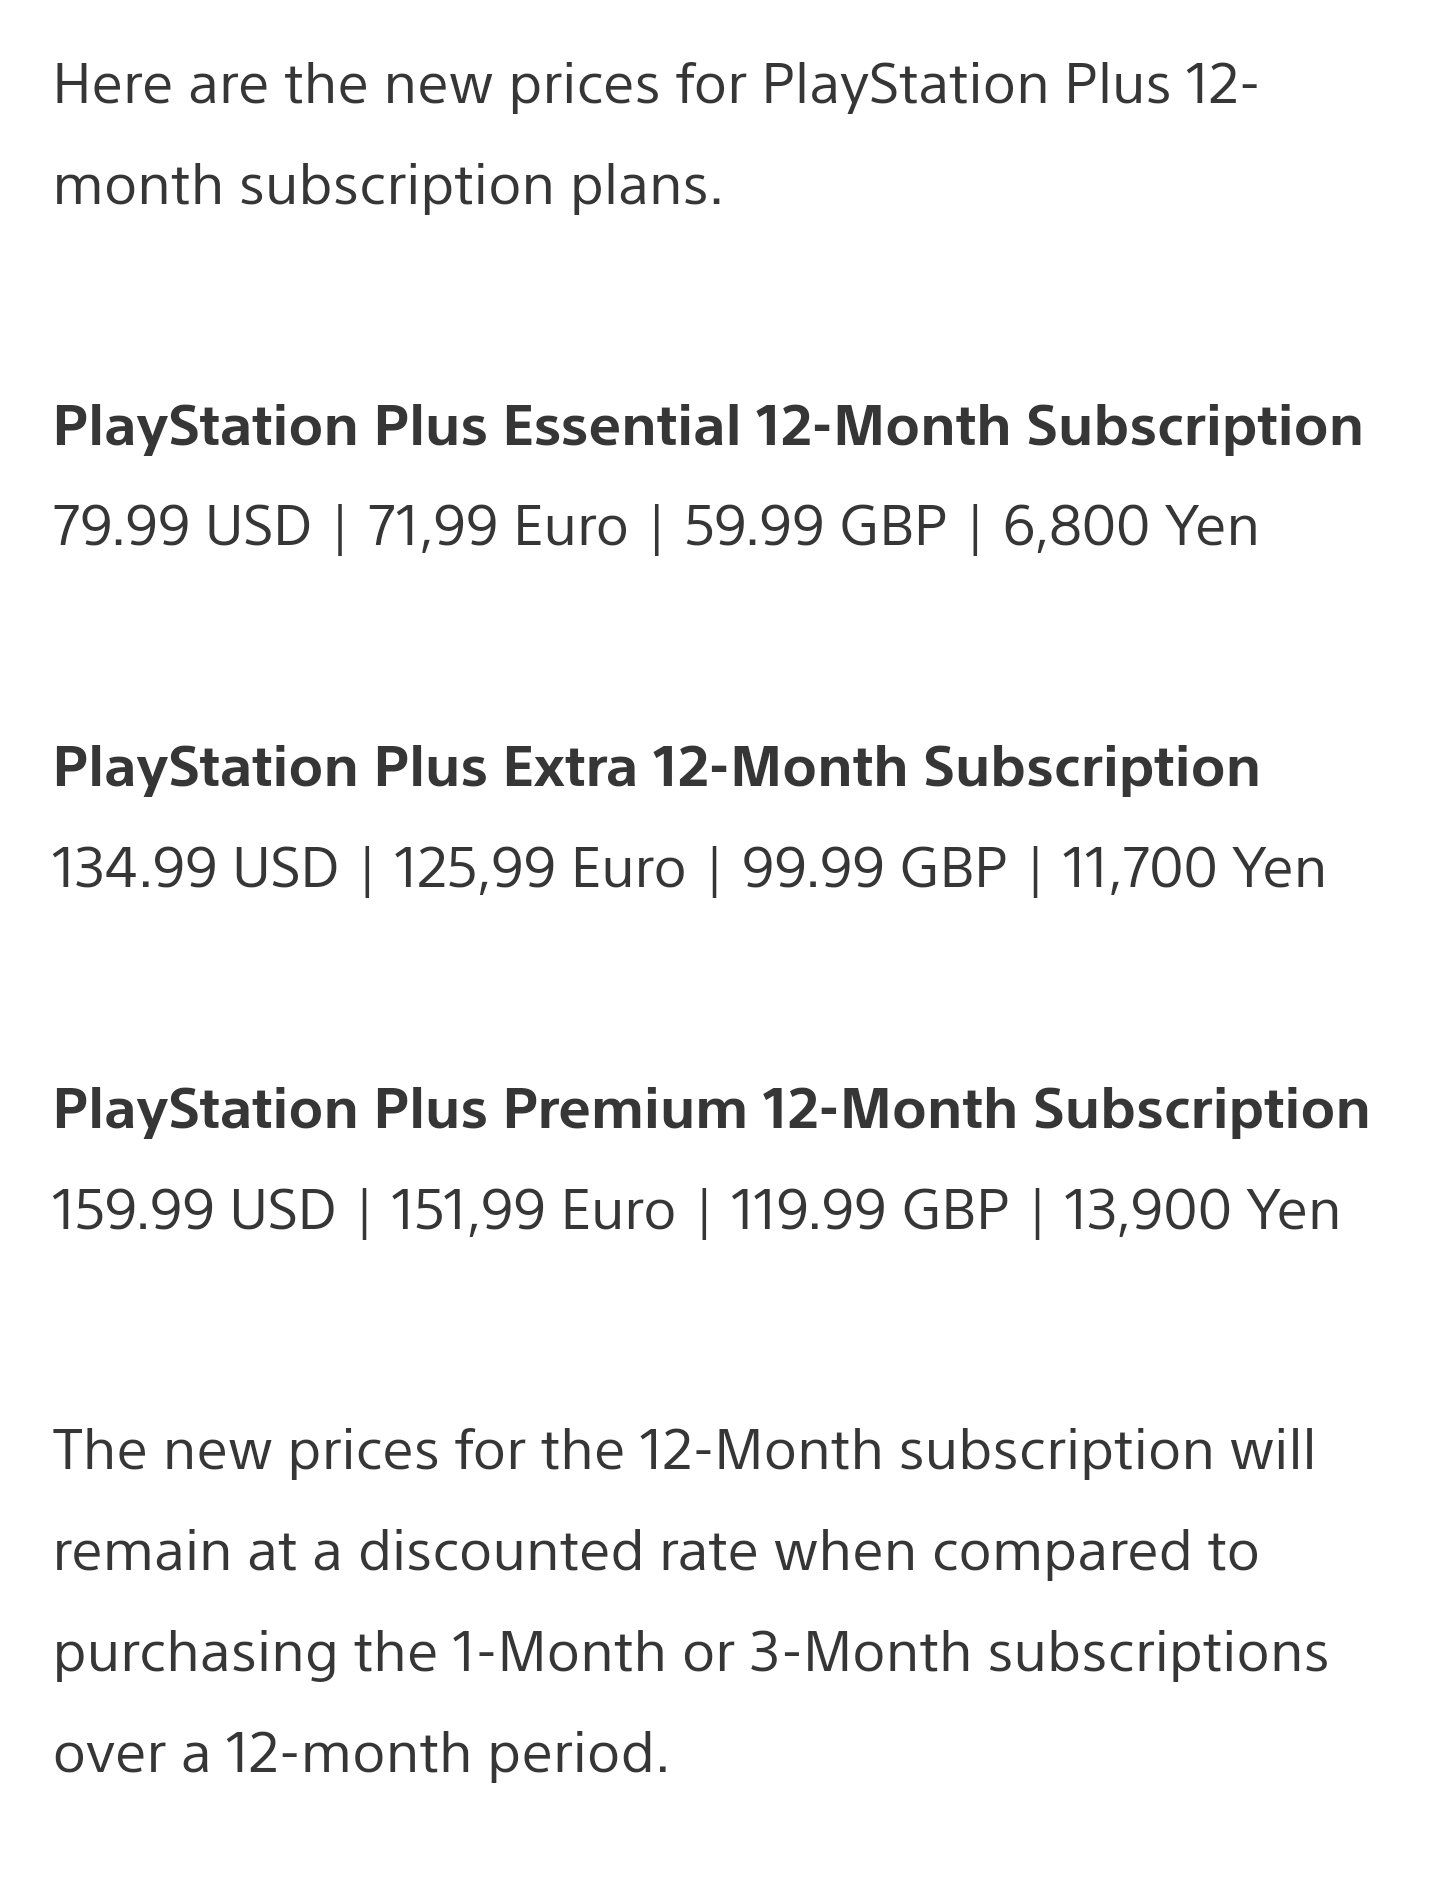 Buy PS Plus Premium Compare Prices